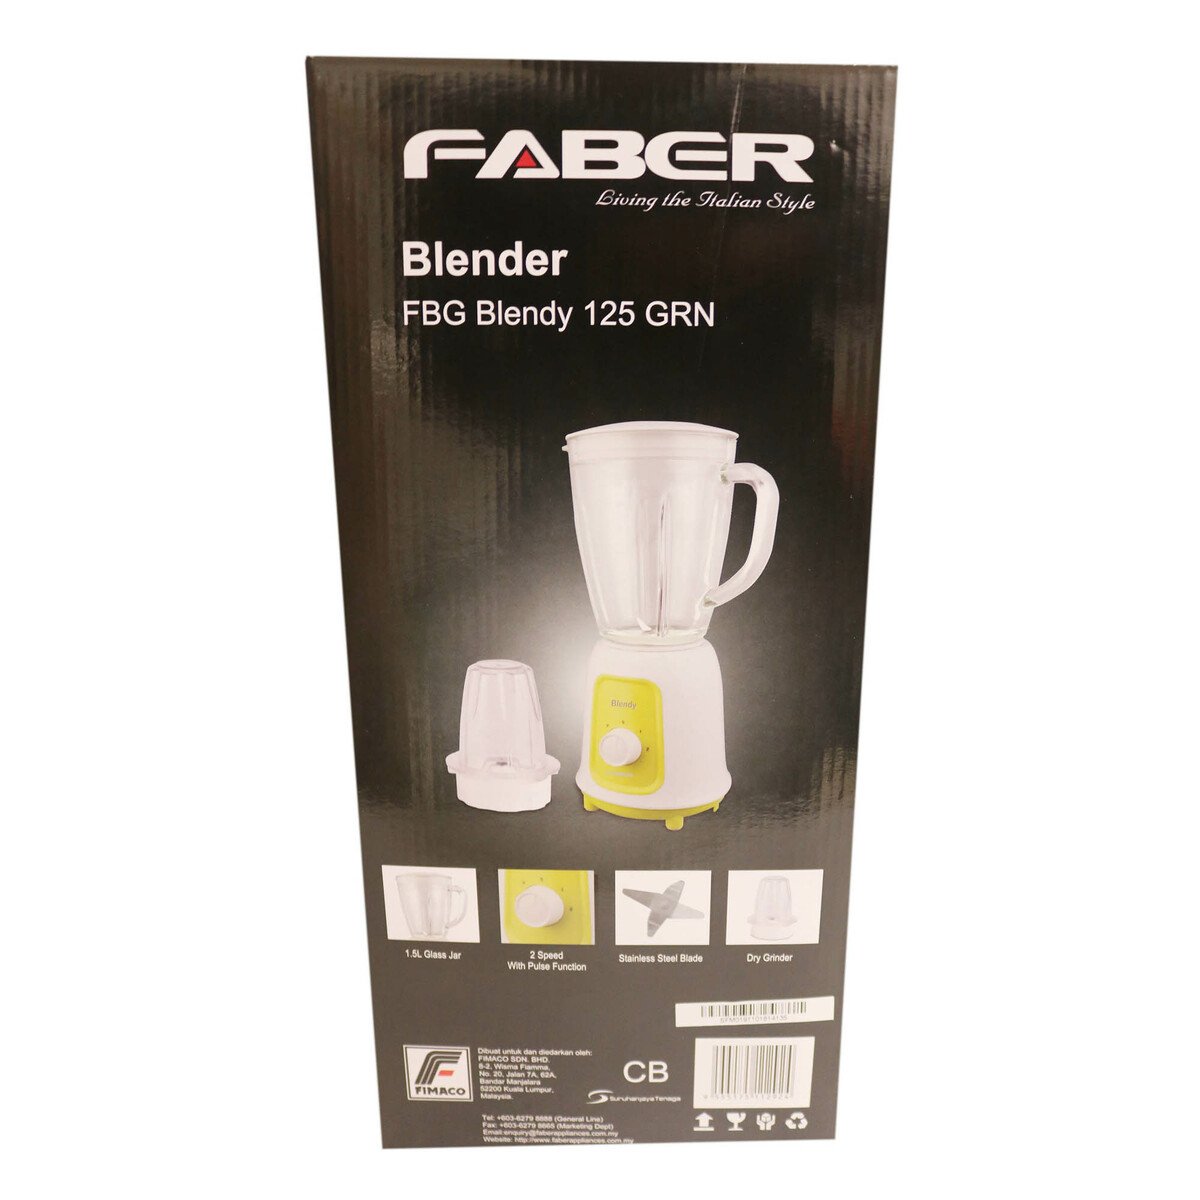 Faber Blender FBG 125 Glass